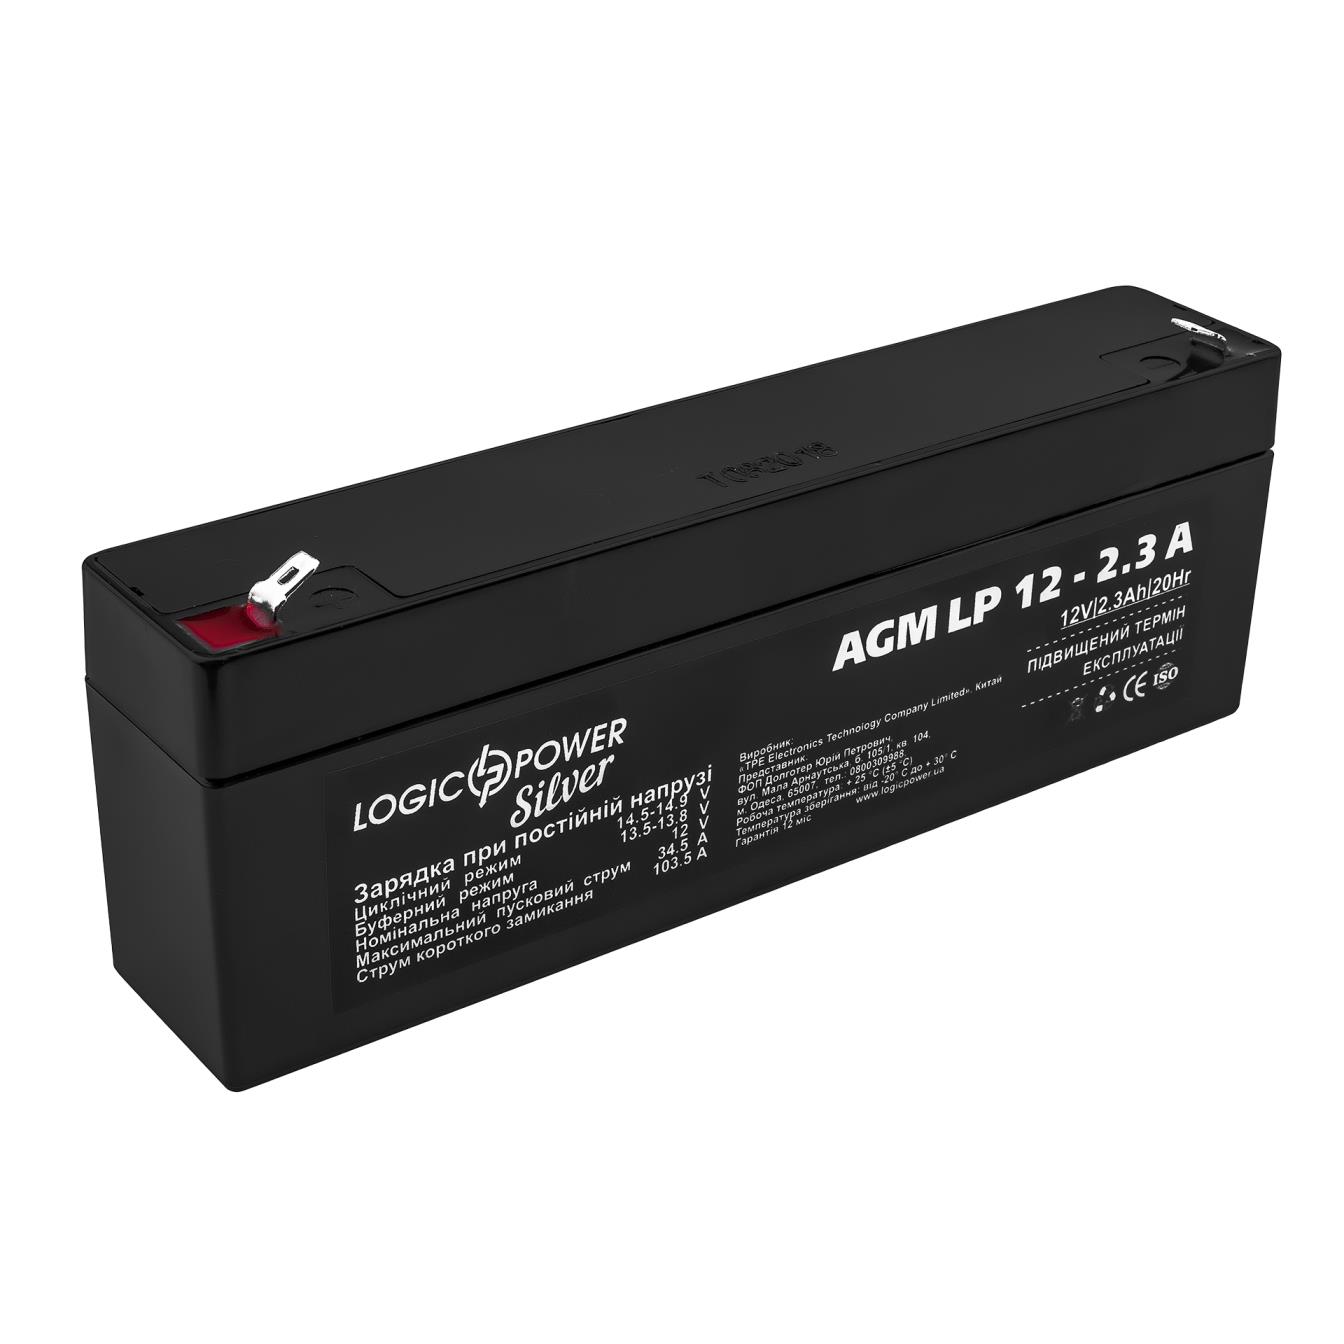 Аккумулятор свинцово-кислотный LogicPower AGM LP 12V - 2.3 Ah Silver (3224) в интернет-магазине, главное фото